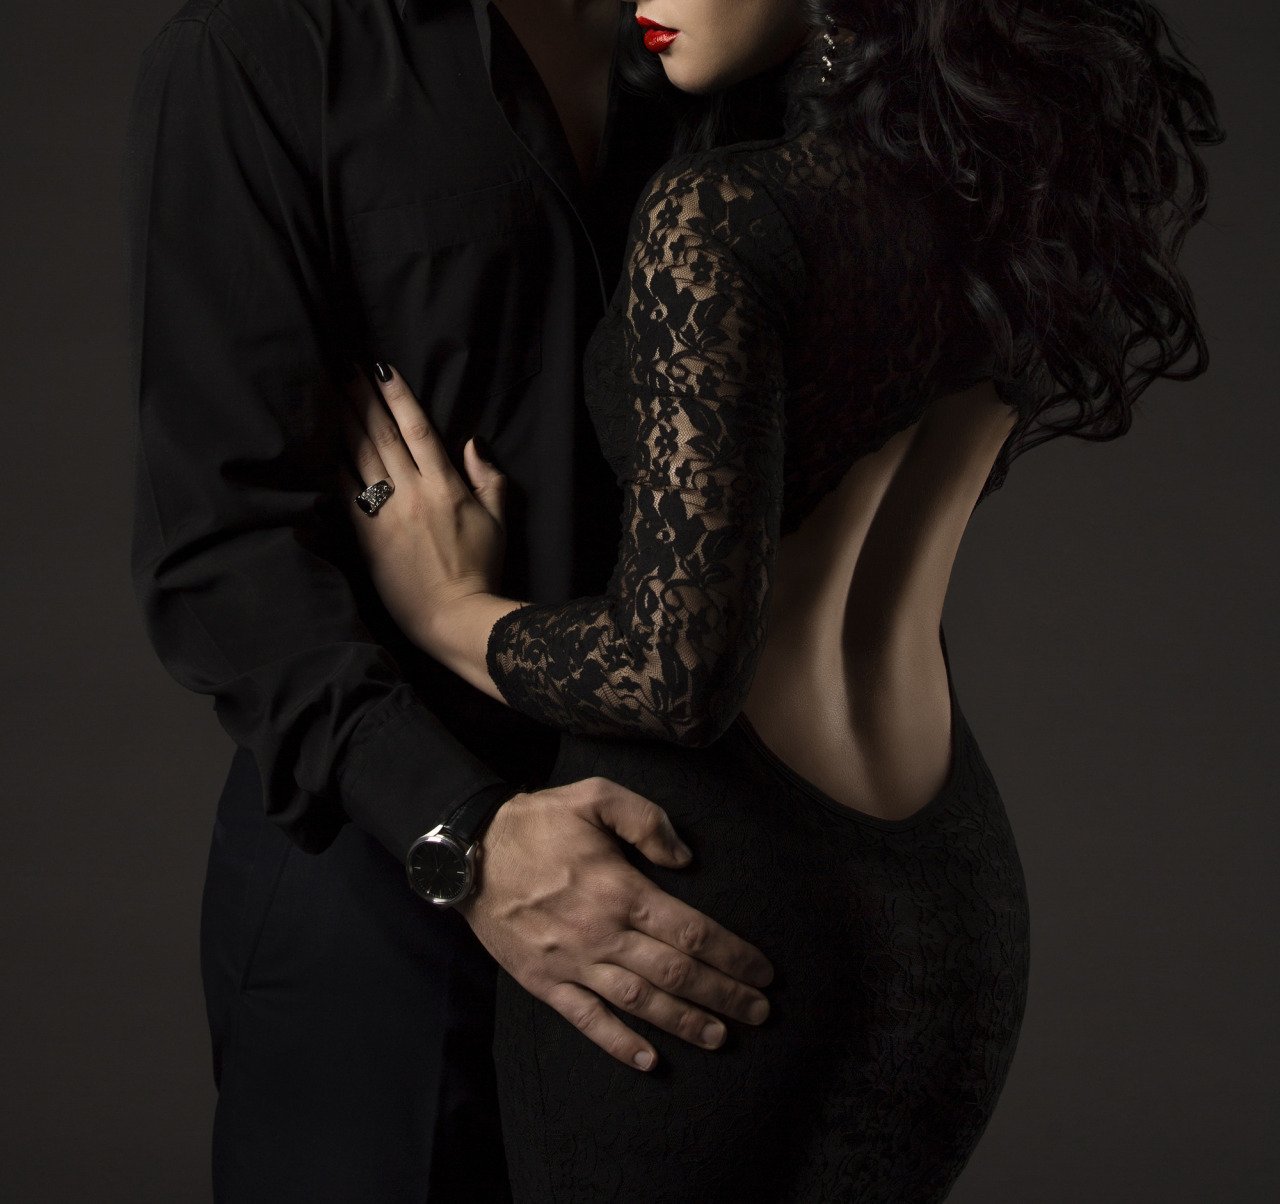 Обнимает голую девушку. Мужчина и женщина страсть. Девушка в Вечернем платье с мужчиной. Фотосессия в черном платье. Элегантные мужчина и женщина.